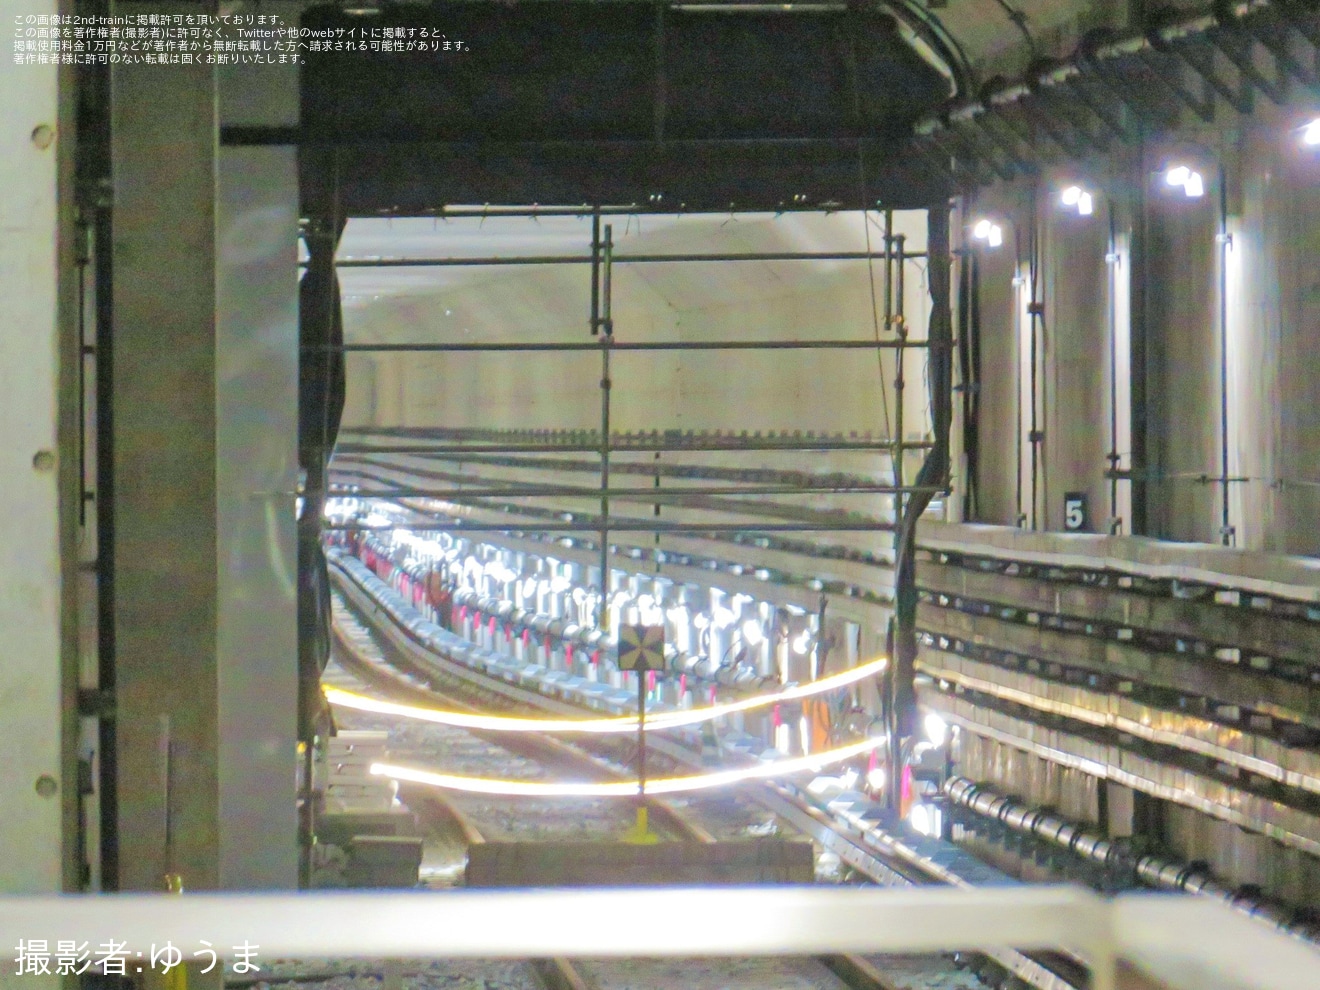 【大阪メトロ】コスモスクエア駅終端部の柵が撤去され夢洲からの線路が出現の拡大写真